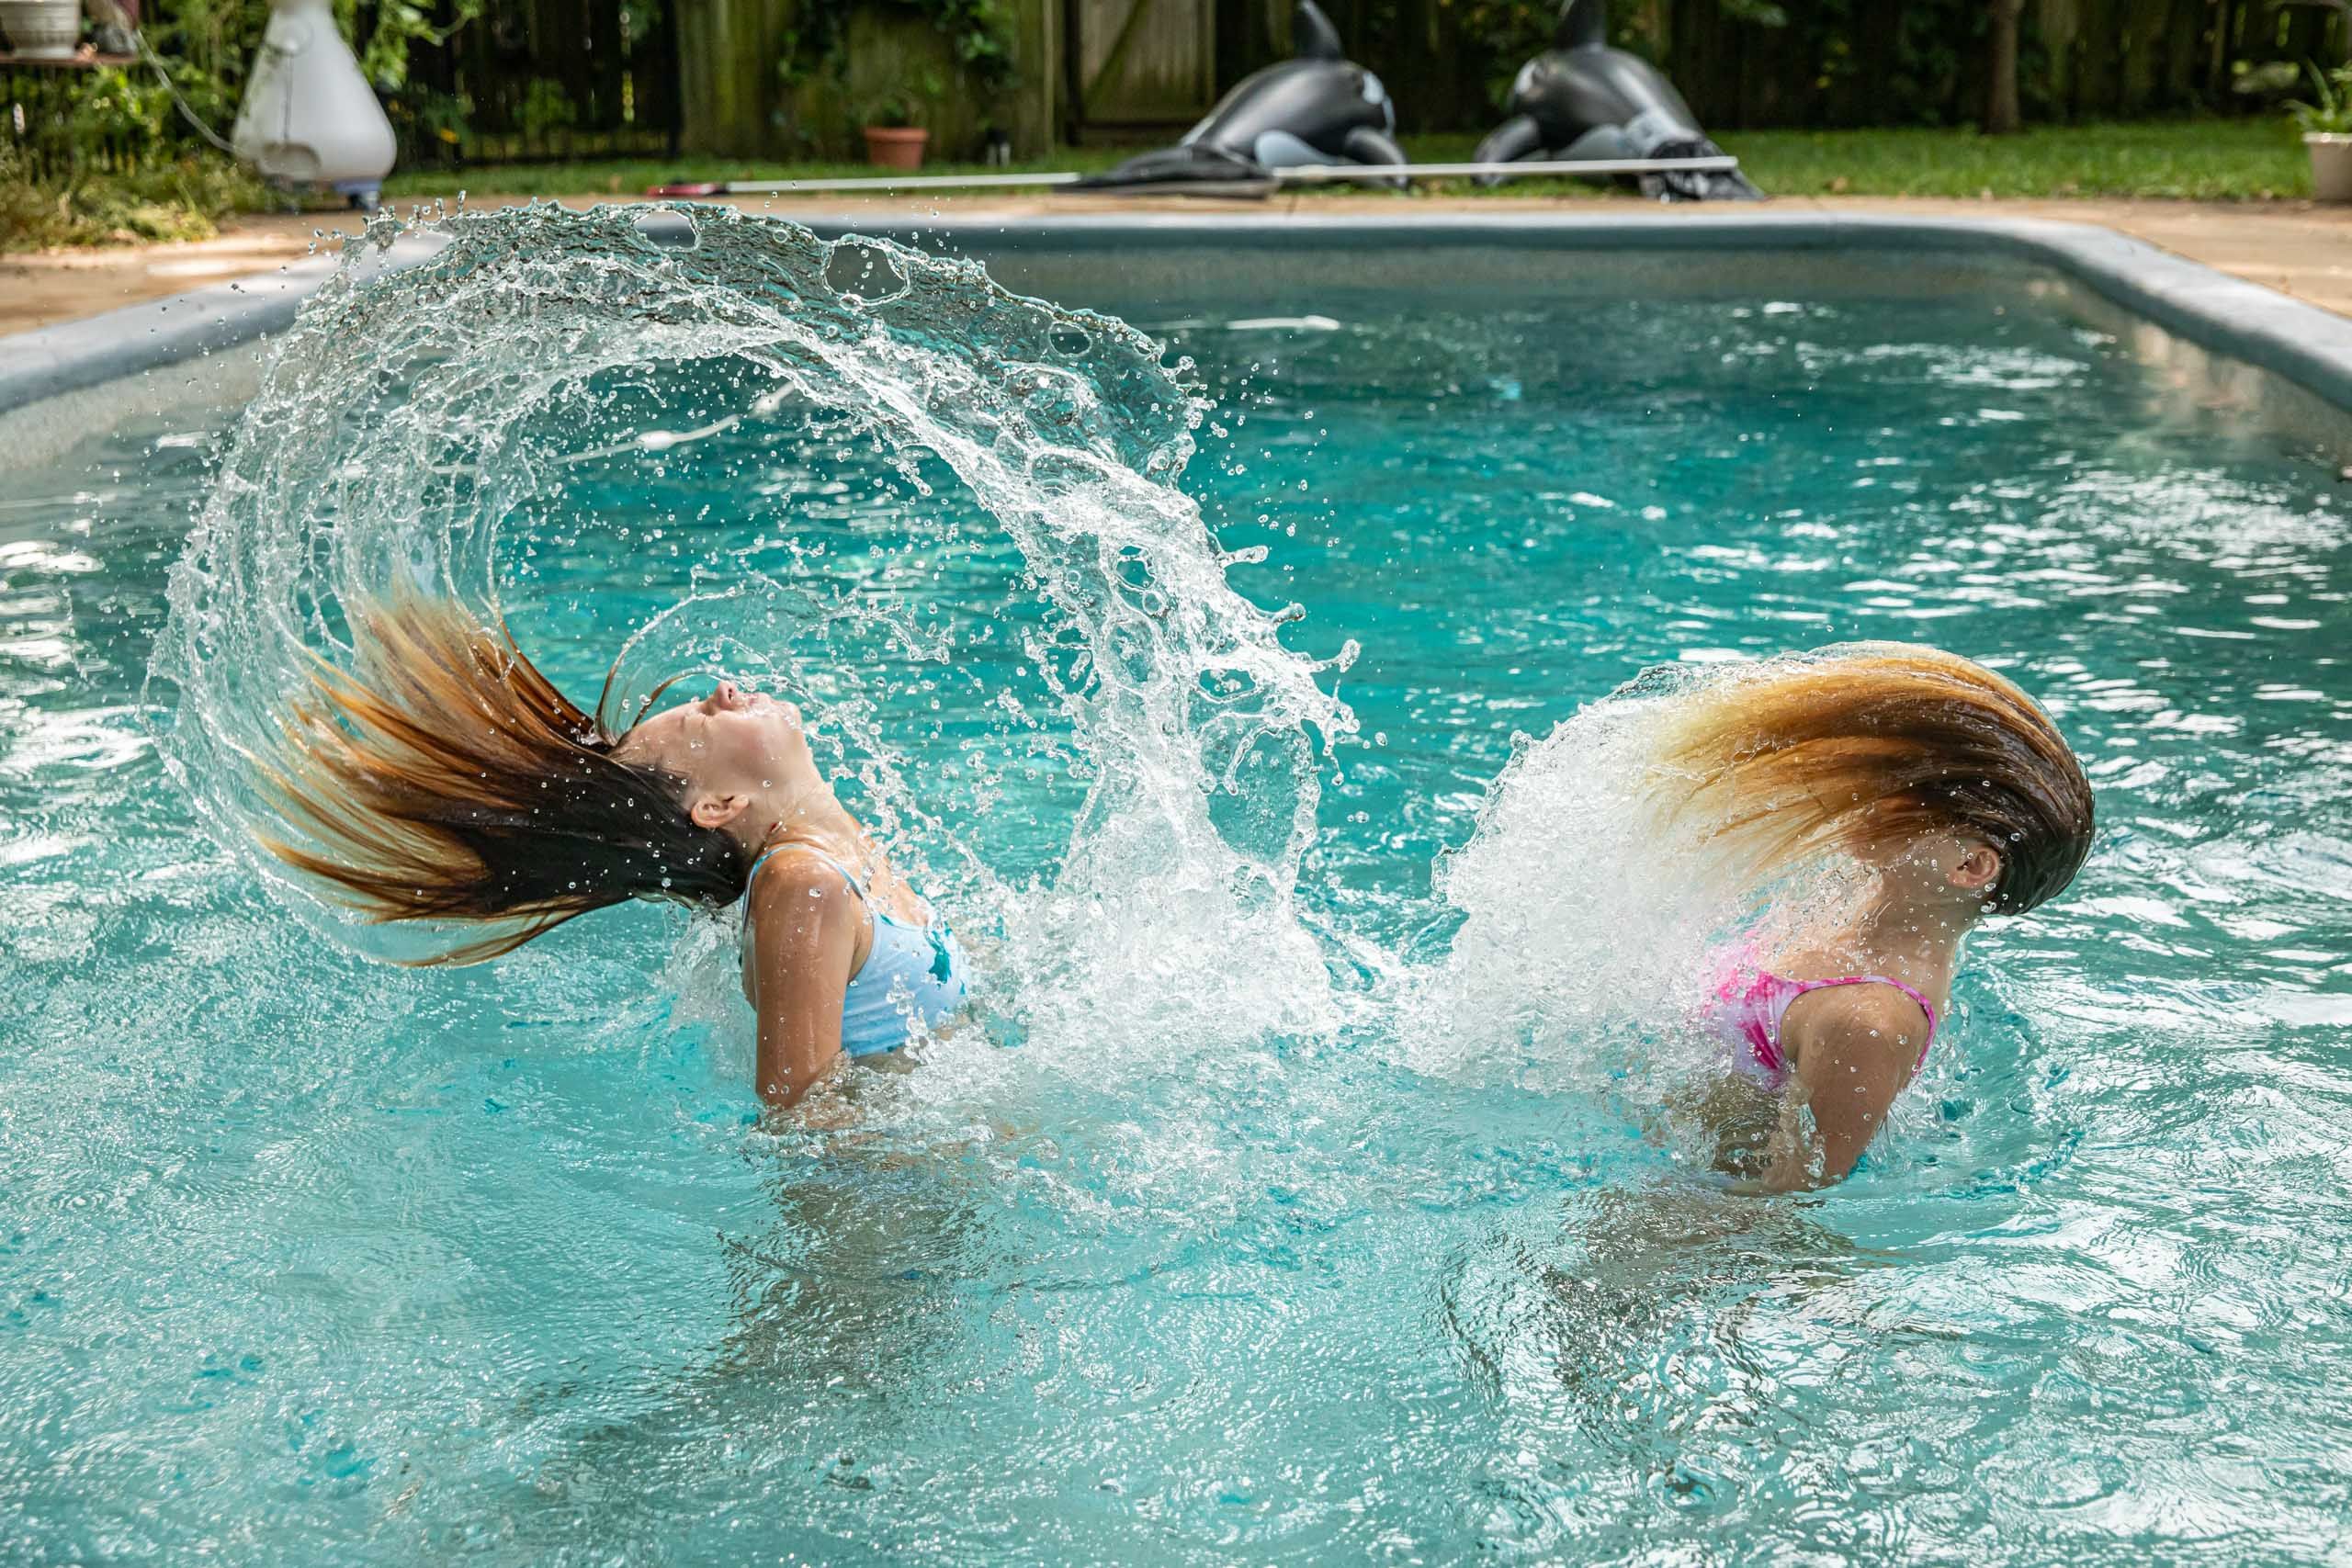 Girls Flip Their Hair in Pool